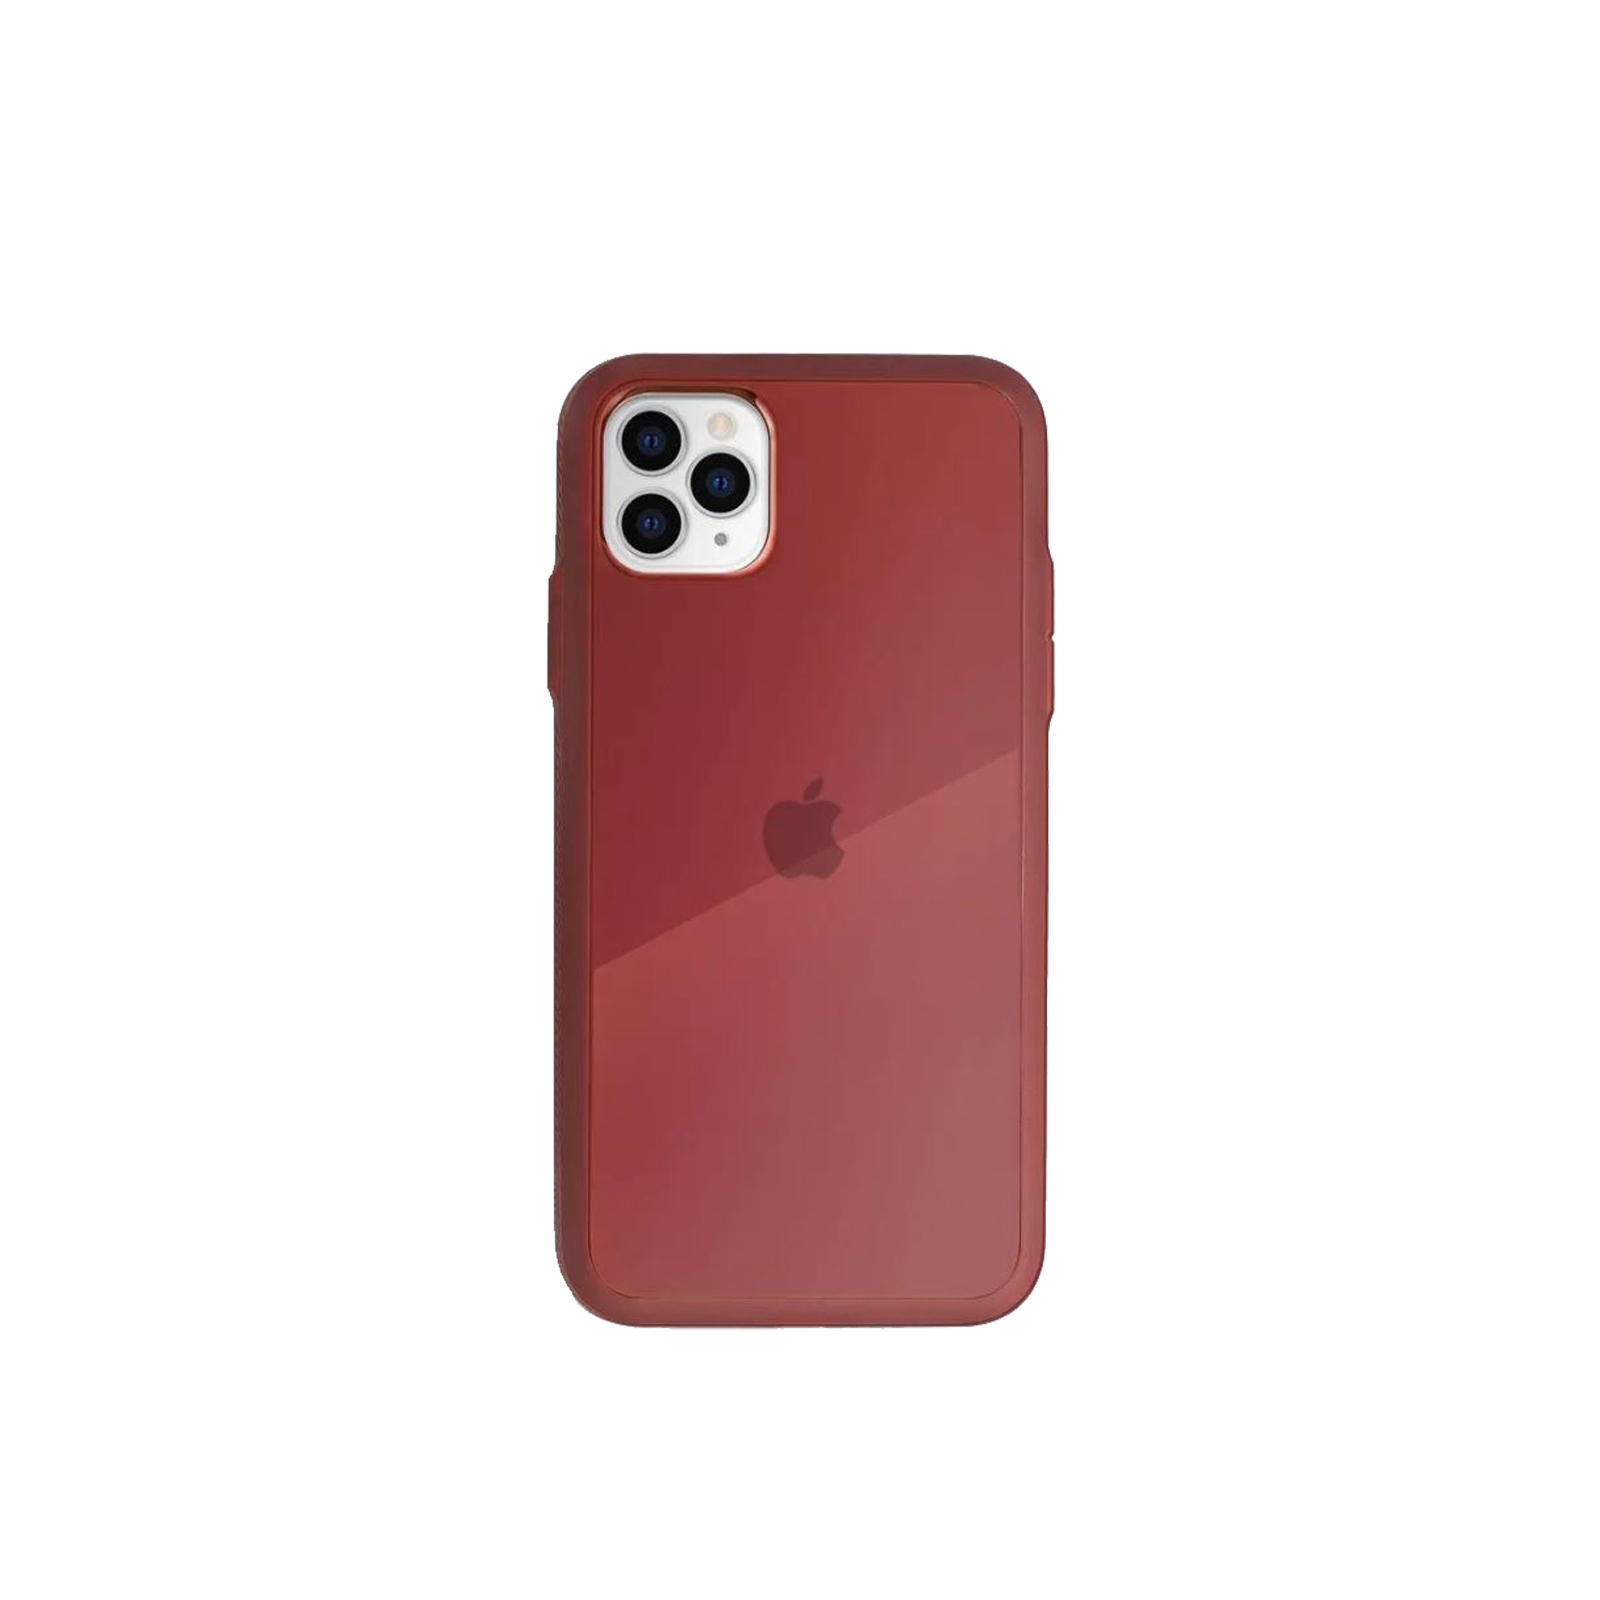 Paradigm S iPhone 11 Pro Case [Maroon]